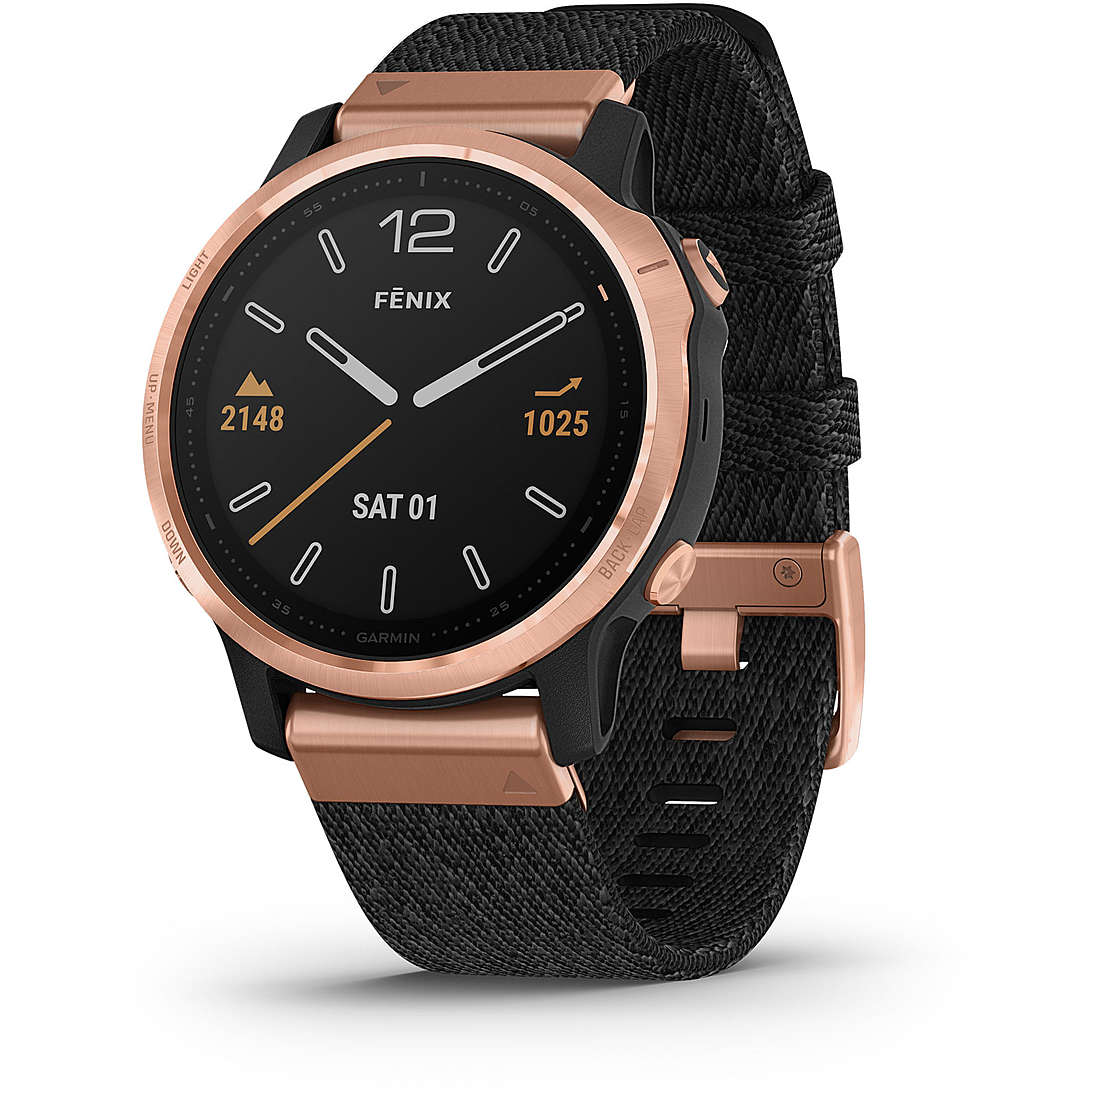 Smartwatch Garmin Fenix orologio uomo 010-02159-37